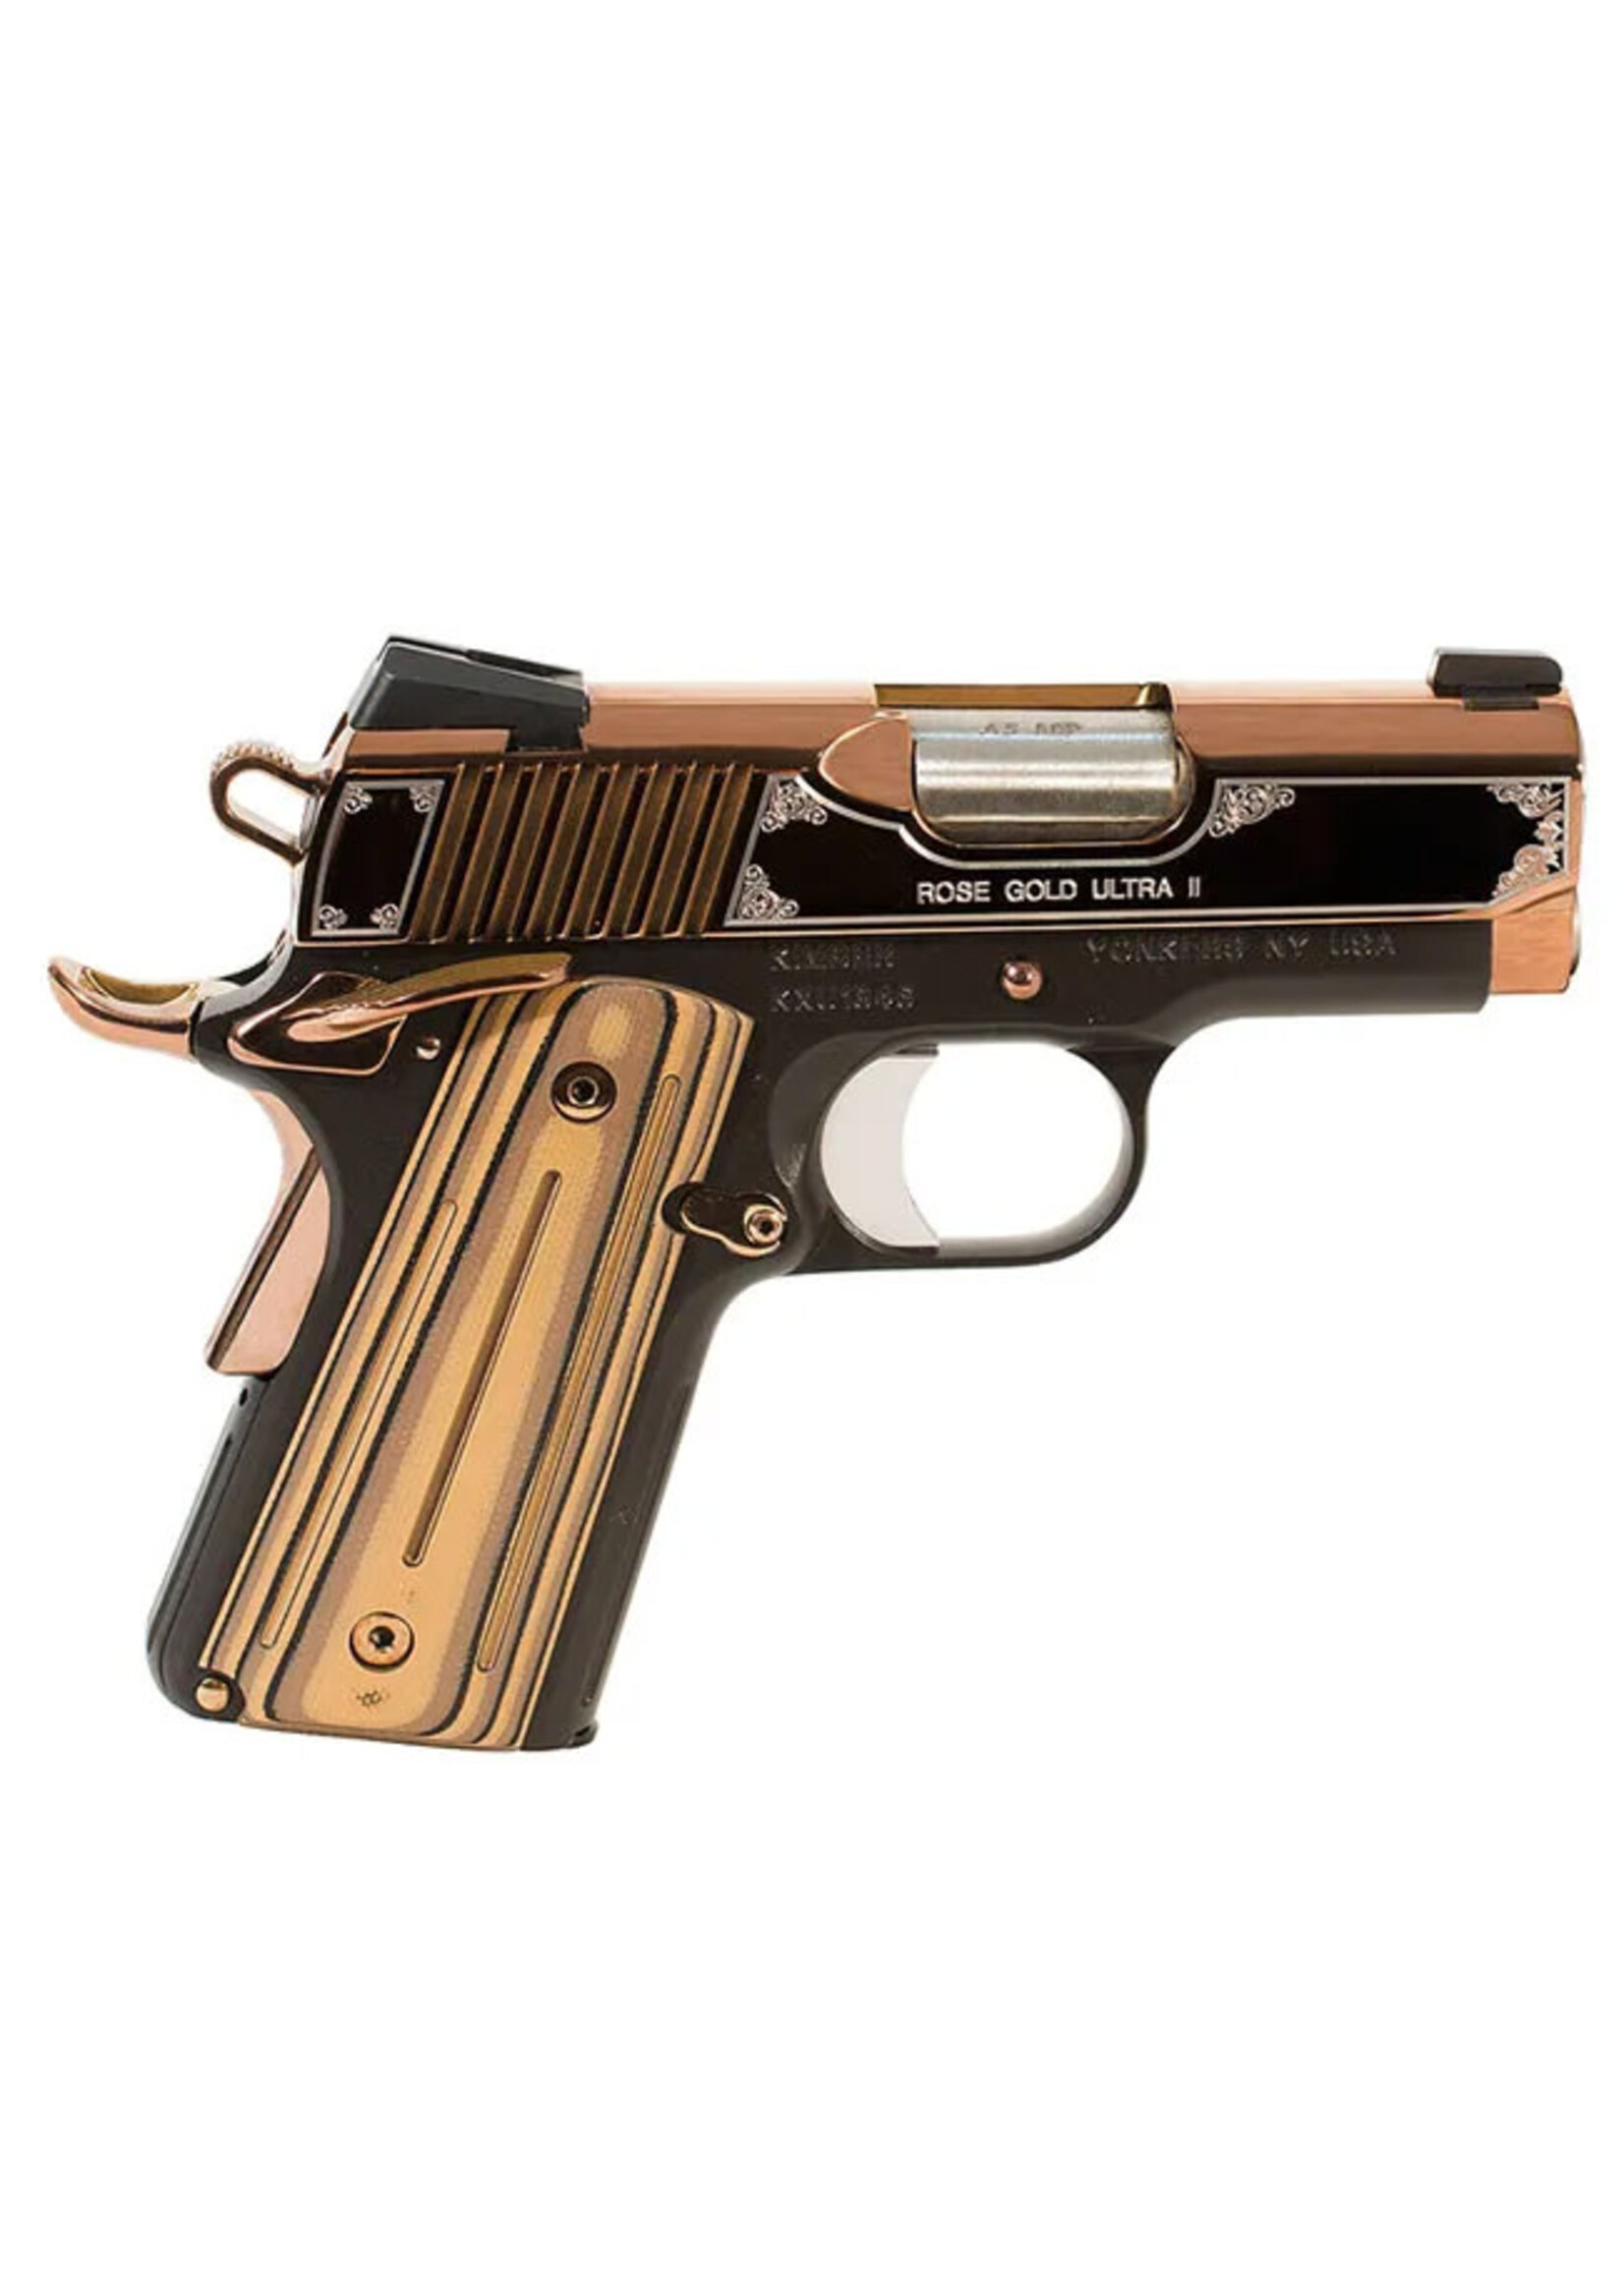 Kimber Kimber Rose Gold Ultra II 9mm Pistol 3200372